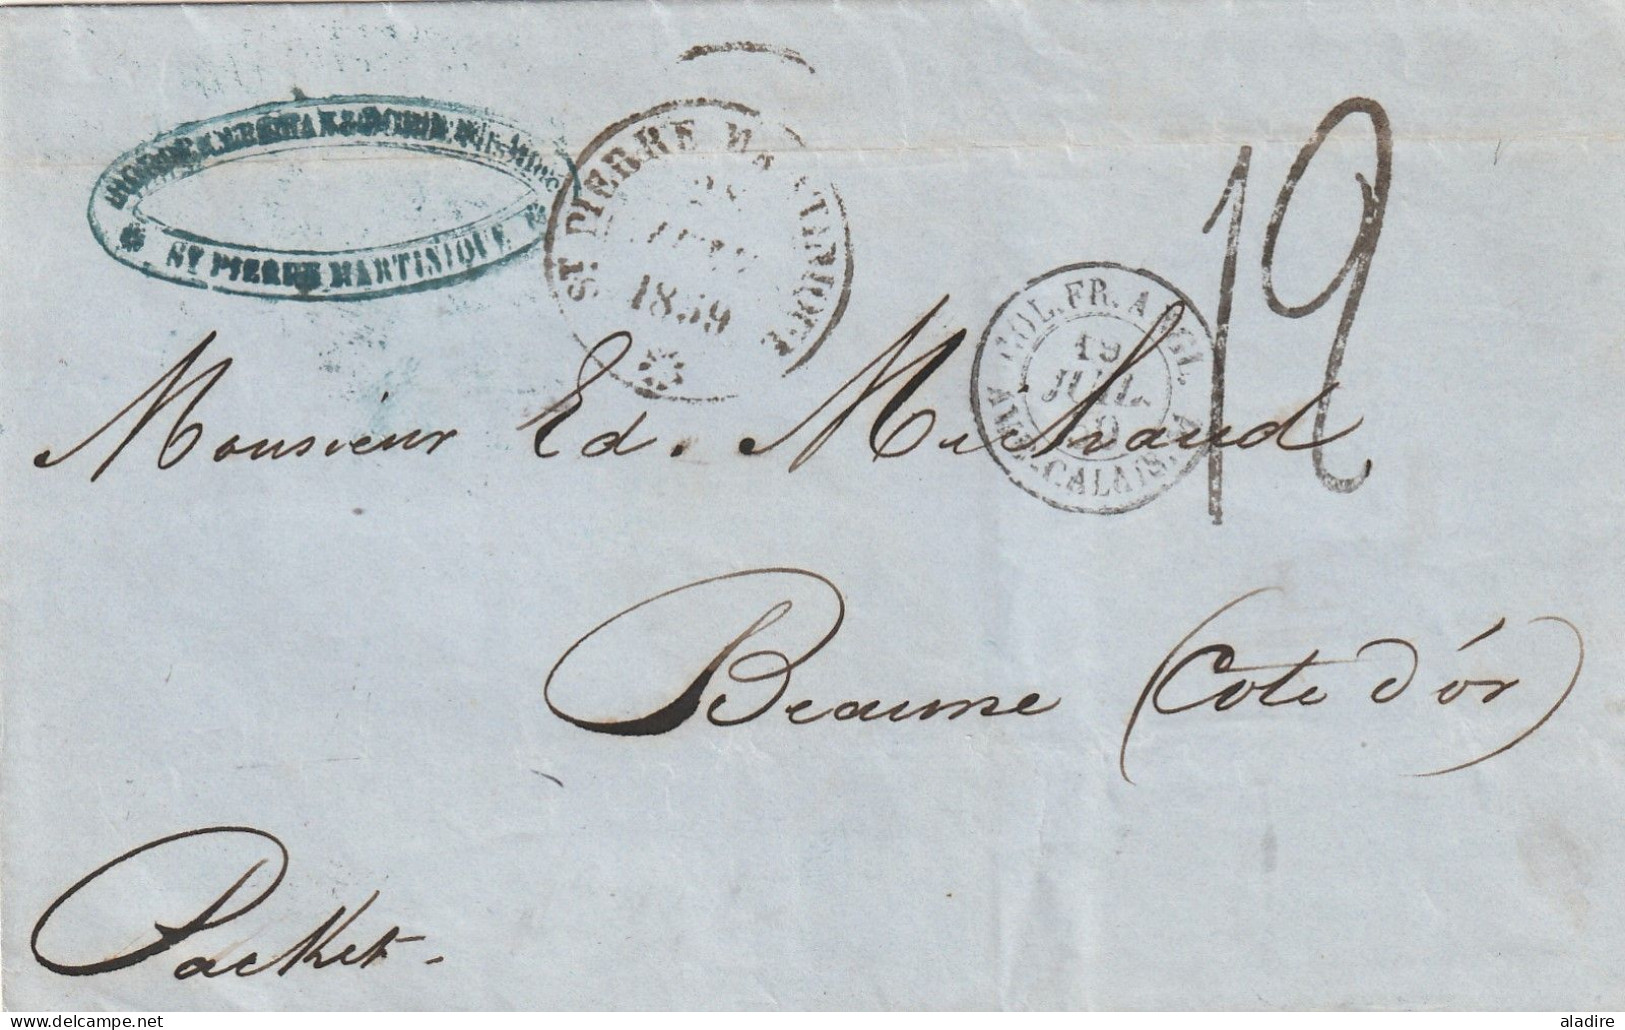 1818/1924 - petite collection de 16 lettres, cartes postales, entiers, enveloppes, télégramme de MARTINIQUE  (32 scans)